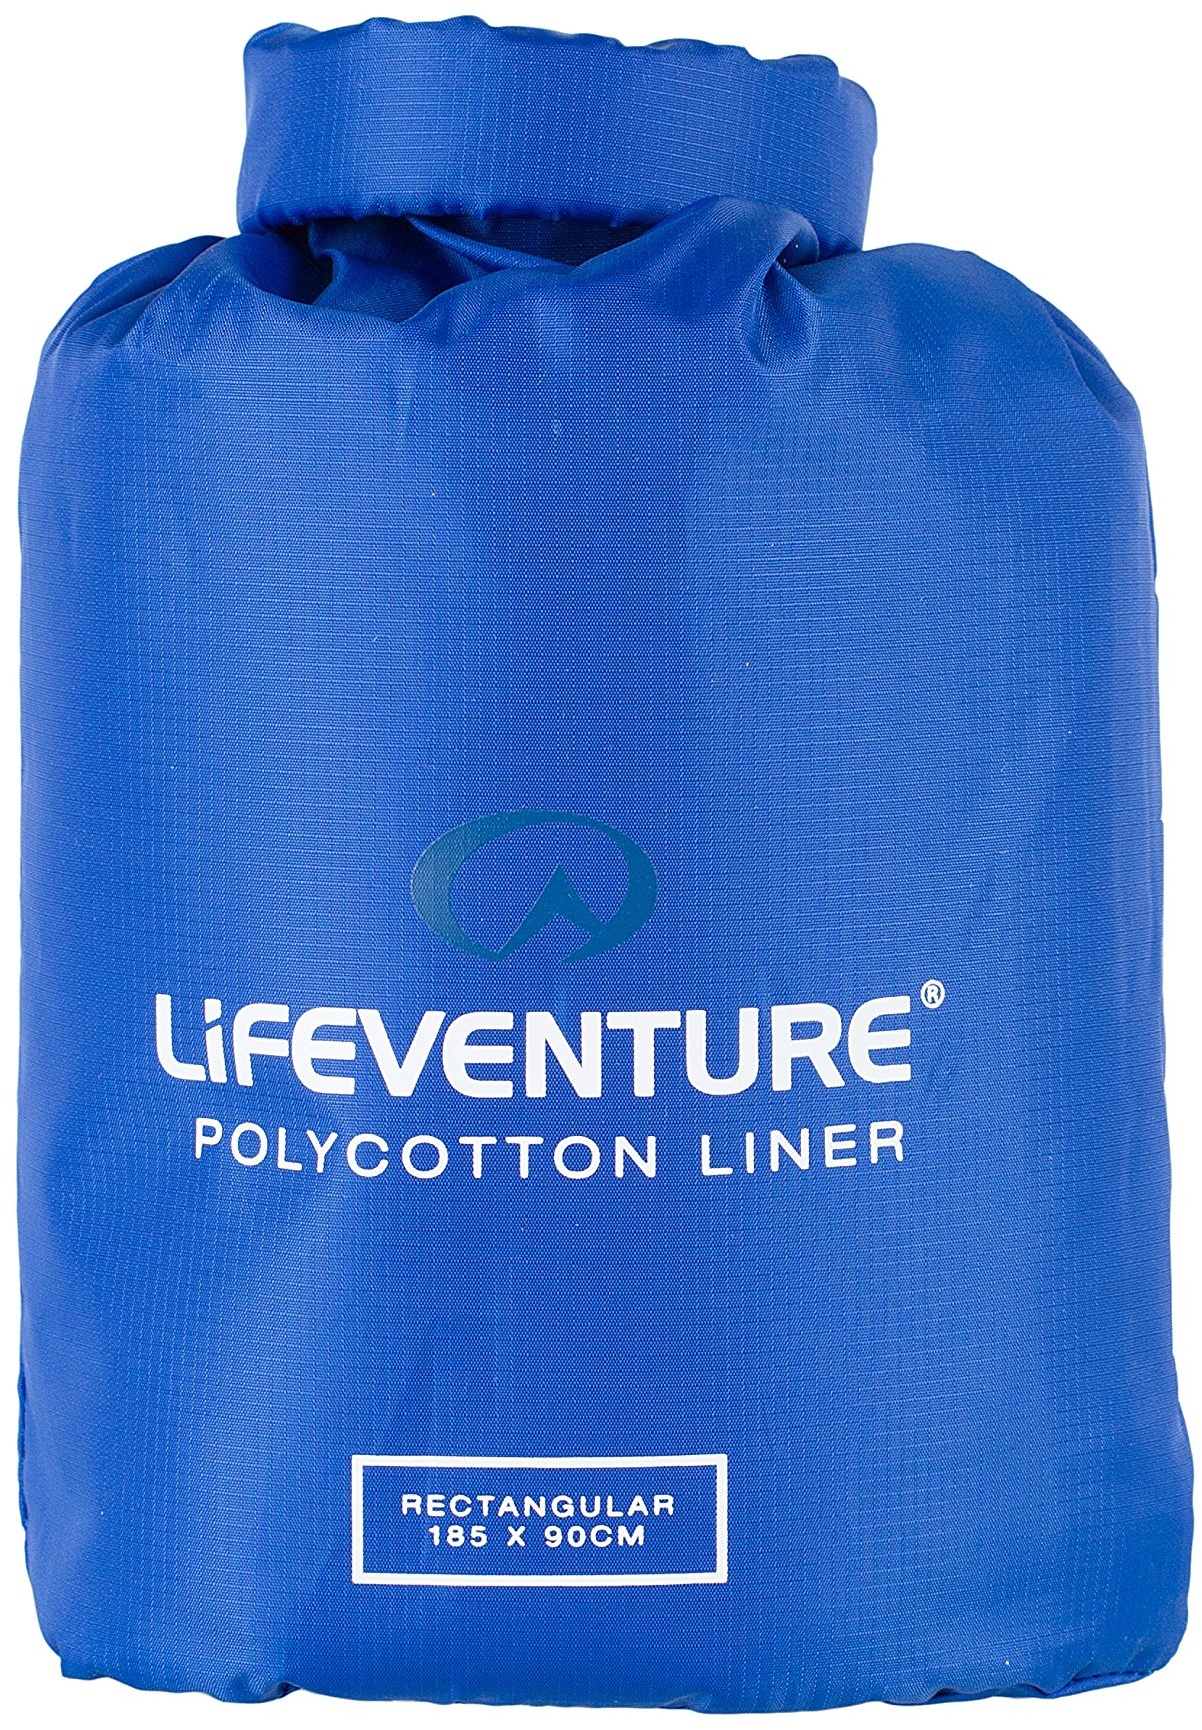 Lifeventure Polycotton Schlafsackeinlage. Leichtes Reise- und Campinglaken zur alleinigen Verwendung oder als wärmende Unterlage für den Schlafsack - rechteckige Form